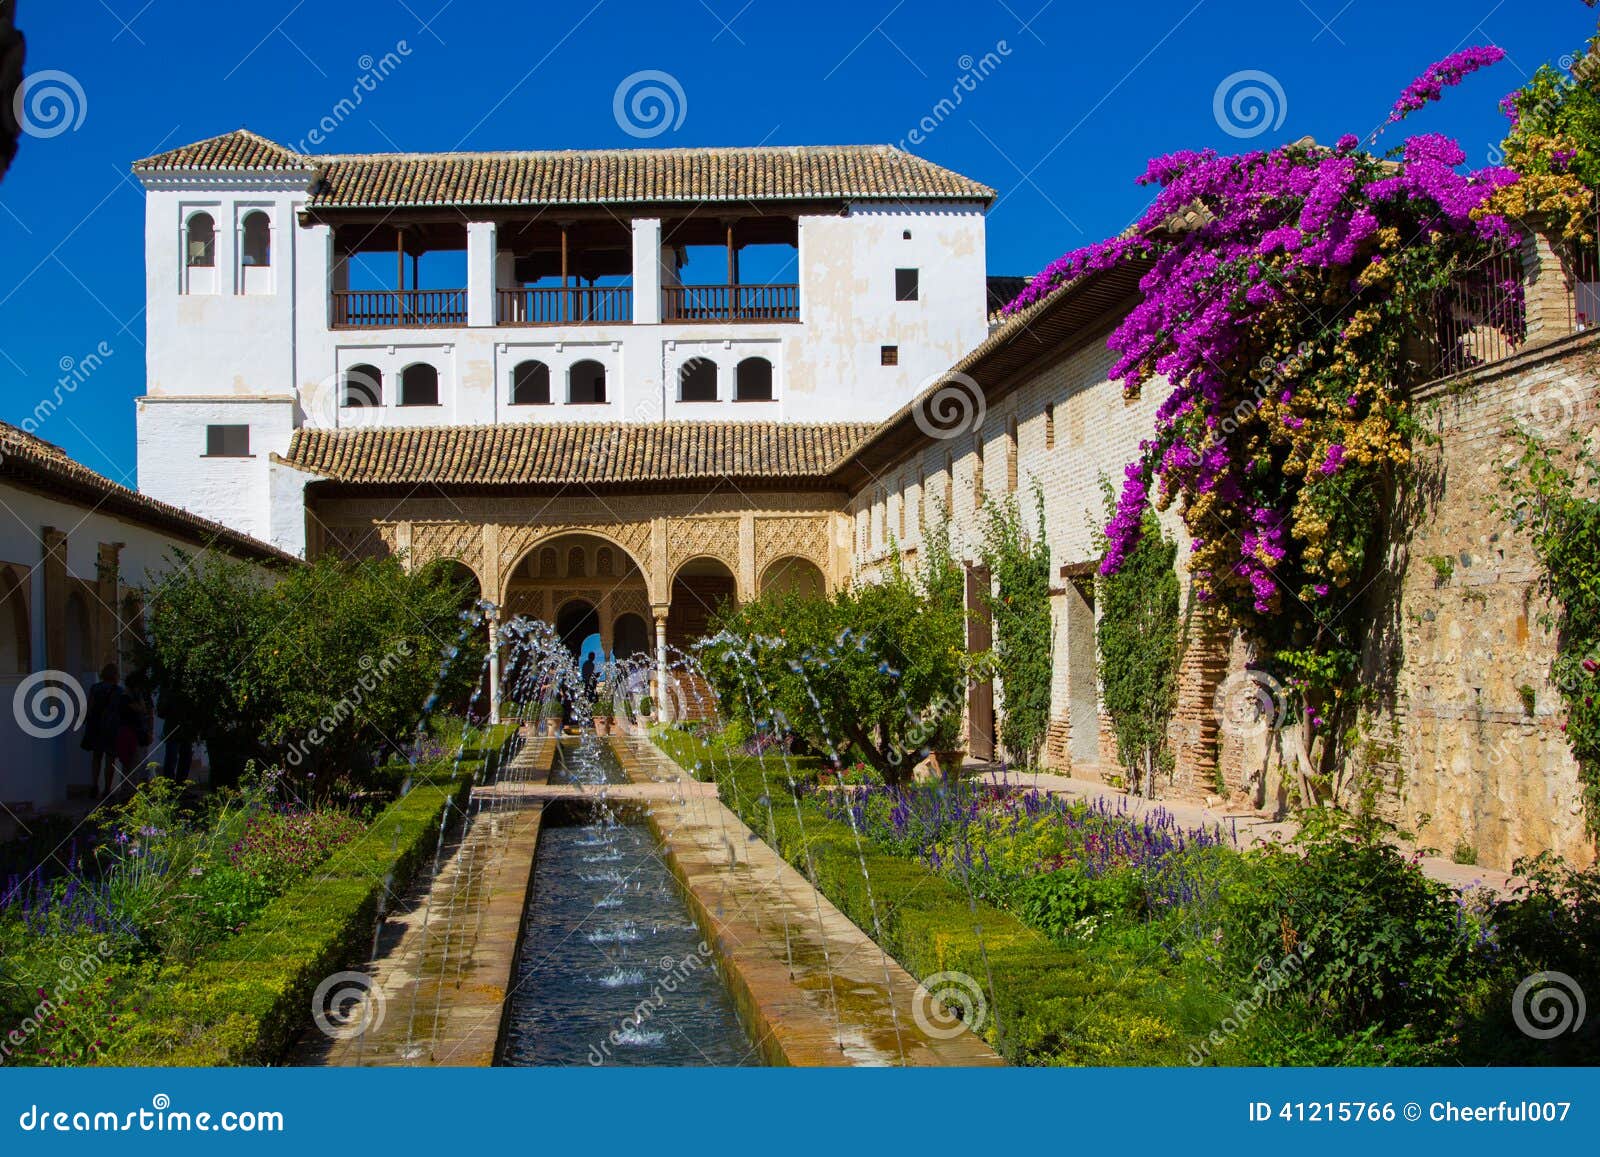 palacio de generalife, alhambra, granada, spain